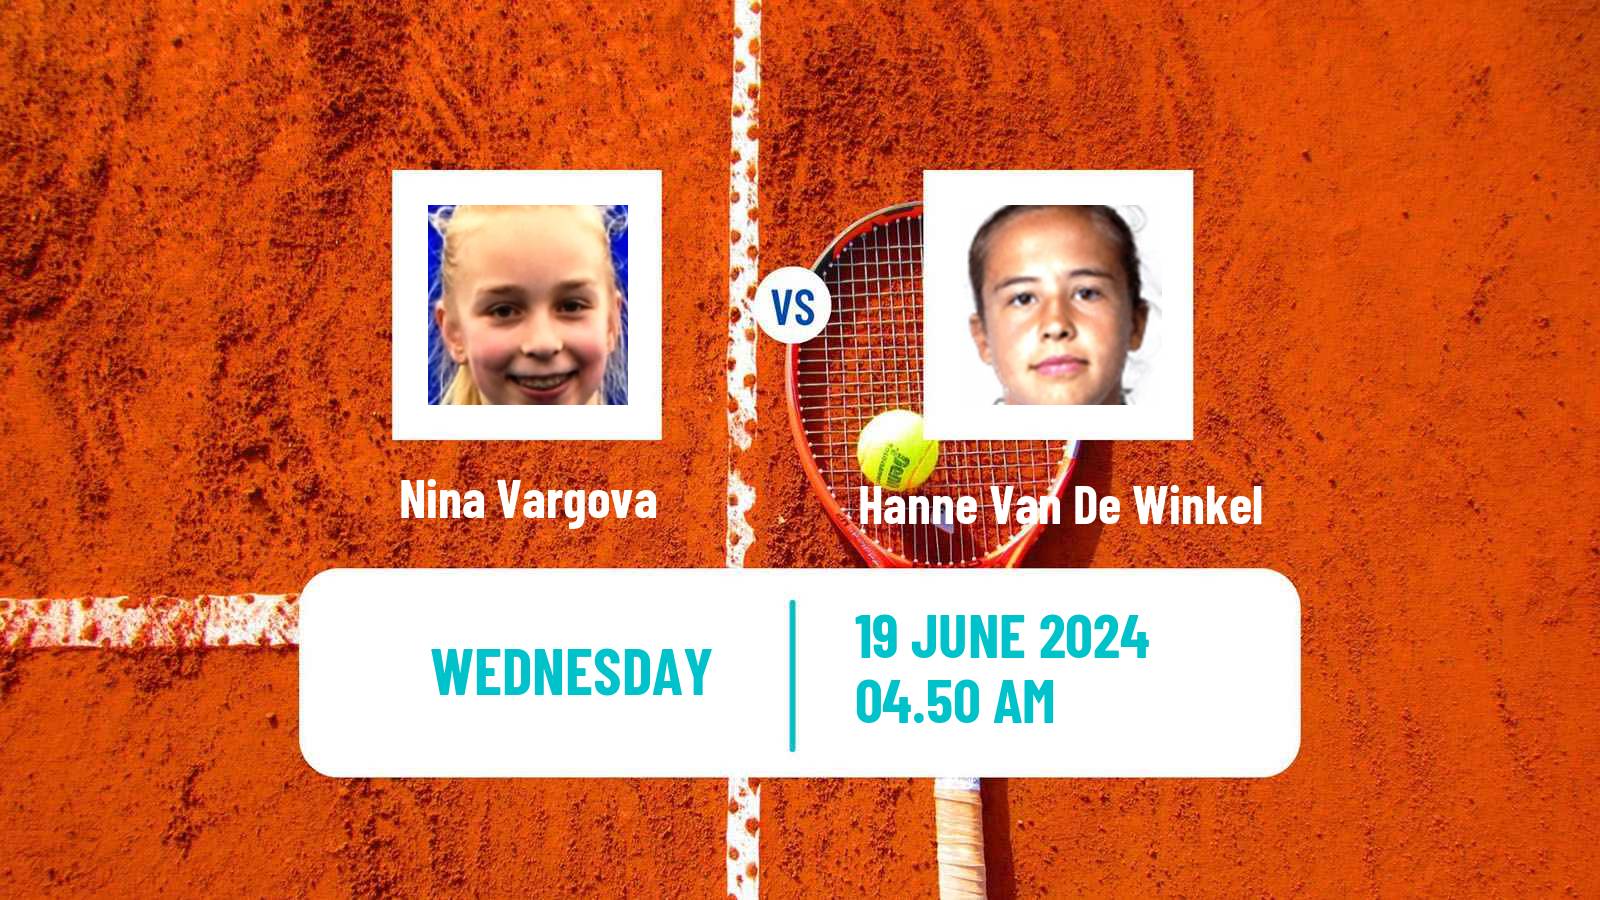 Tennis ITF W50 Ystad Women Nina Vargova - Hanne Van De Winkel